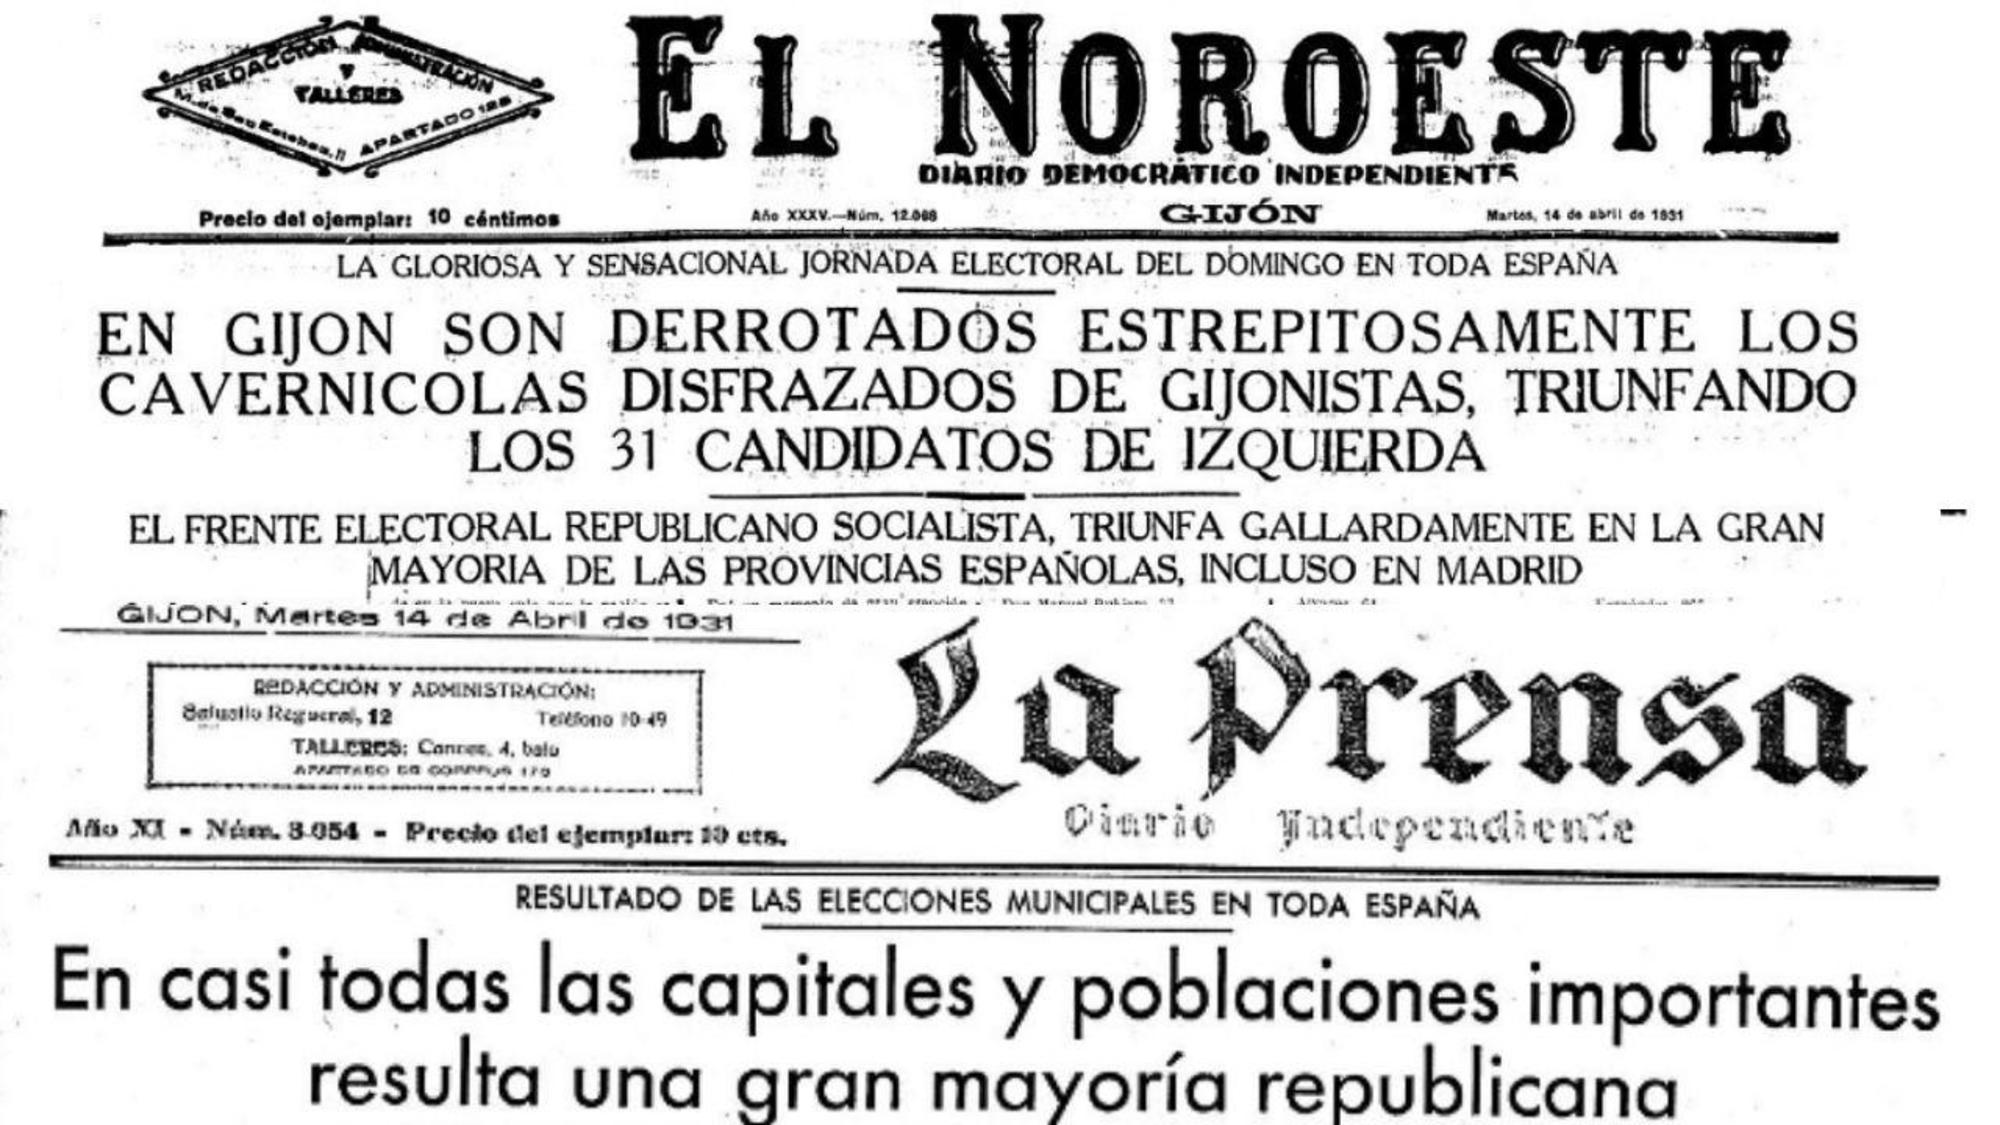 La victoria republicana y socialista de abril de 1931 en la prensa asturiana